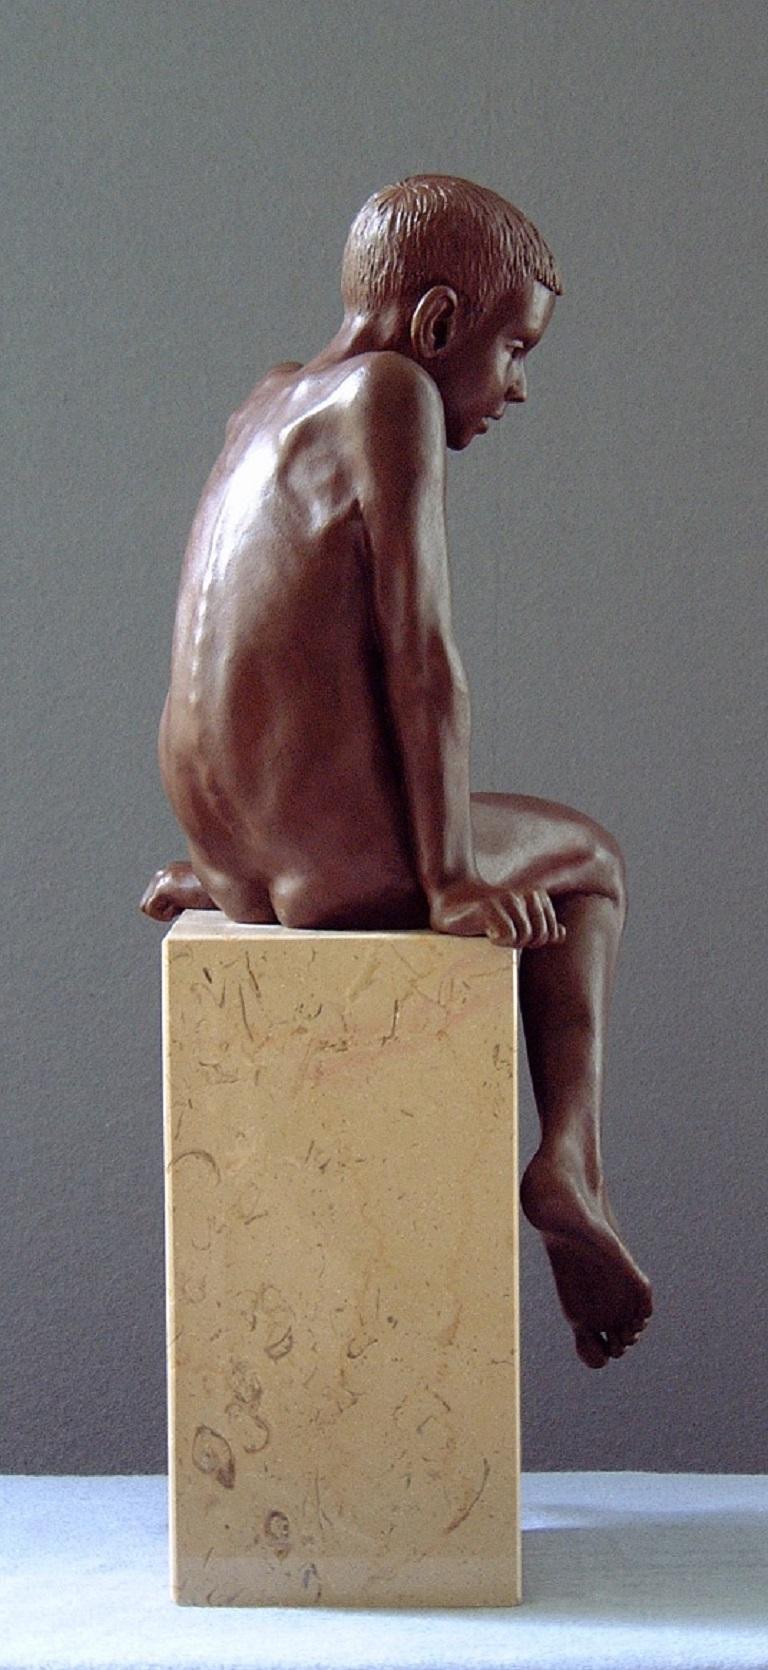 Ira Bronze Skulptur Contemporary Nude Boy Marmor Stone Sitting – Sculpture von Wim van der Kant